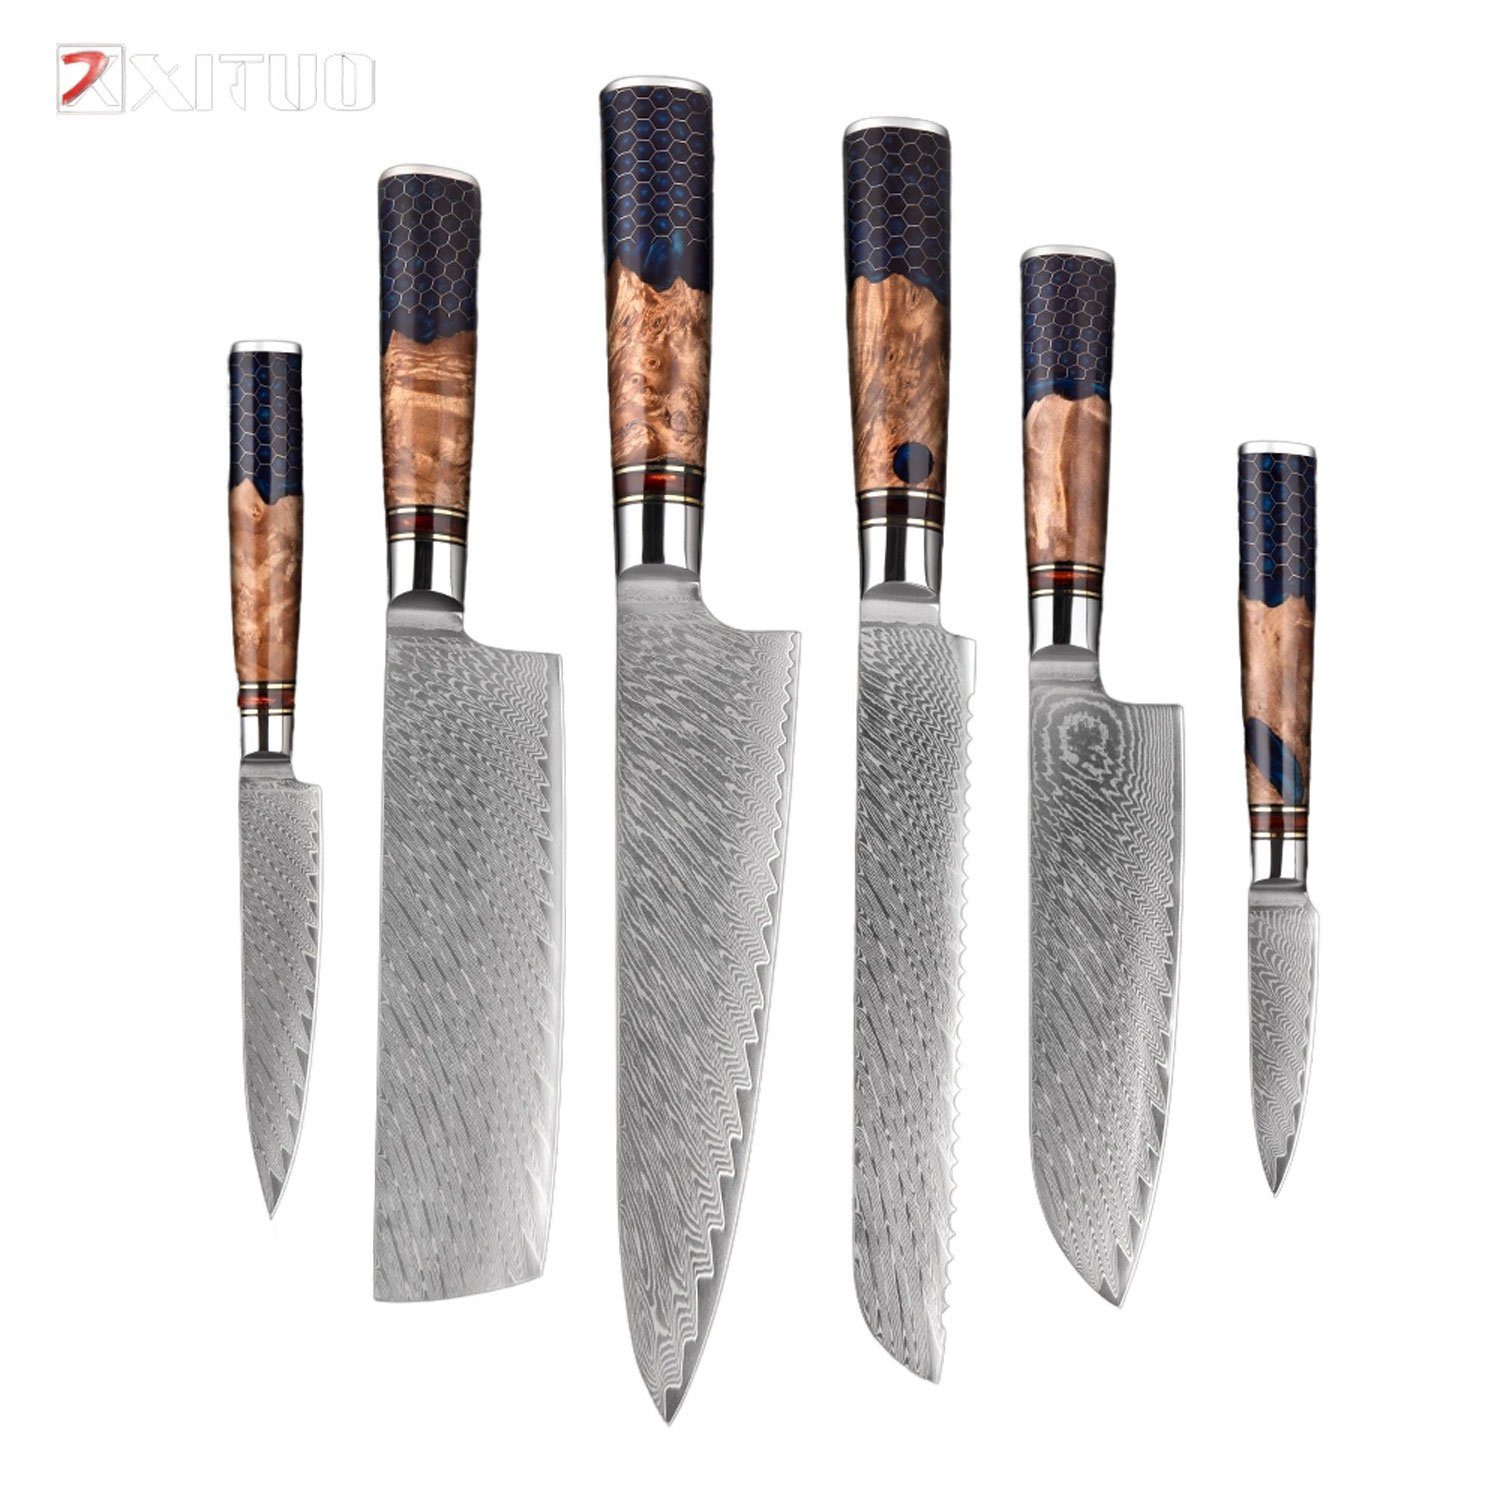 Muxel Damastmesser 6-Teiliges Damast Messer Set. Küchenmesser für jeden Schnitt - extra, Jedes Messer ein Unikat